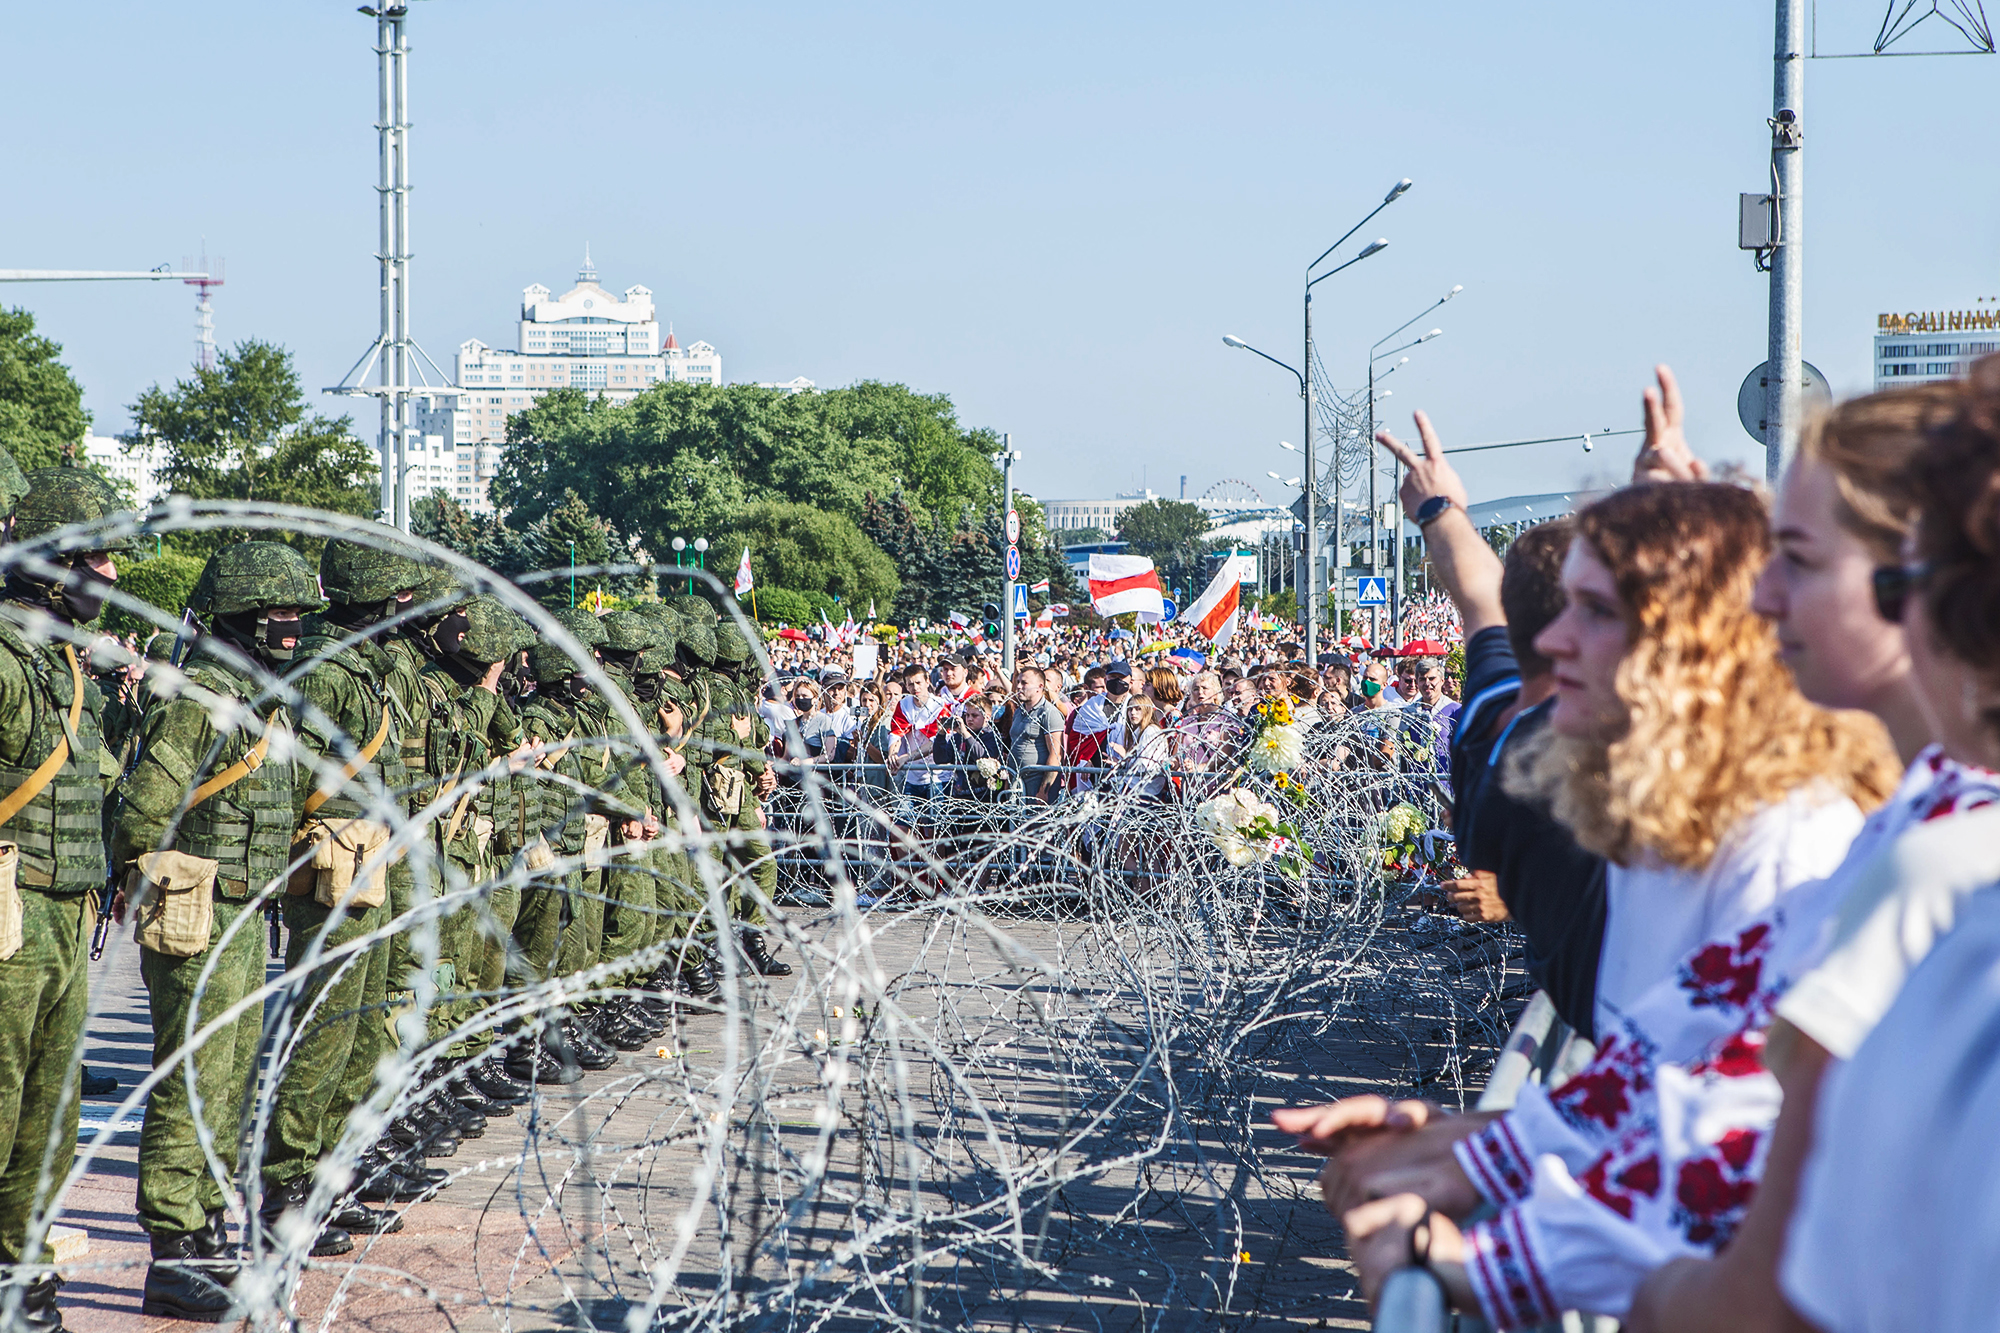 Après la manifestation devant le monument "Stela". Minsk, août 2020.